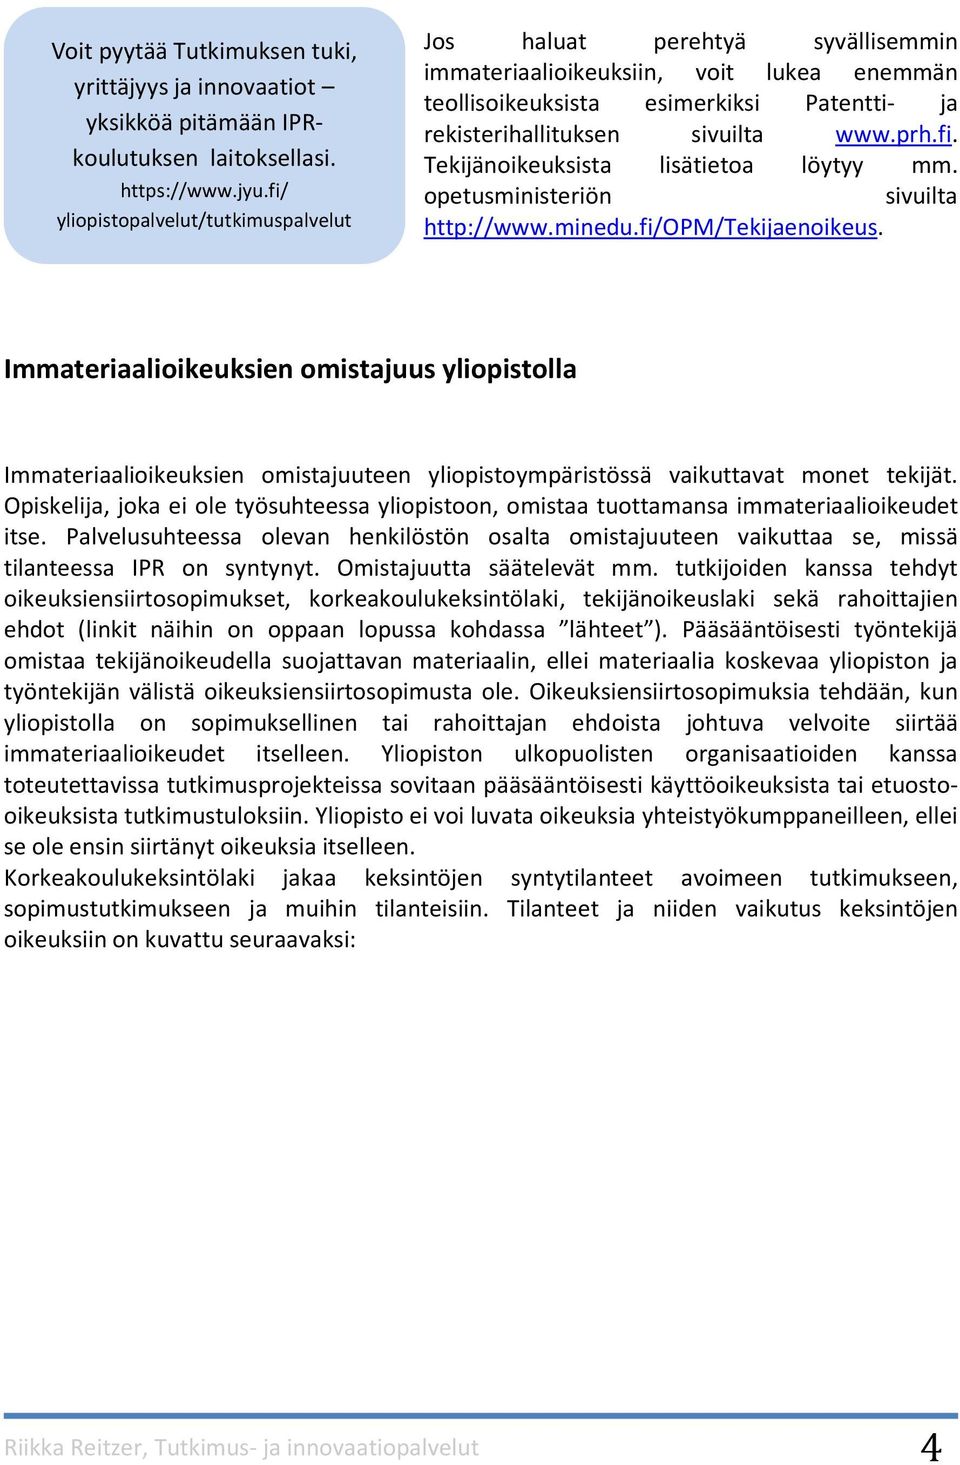 fi. Tekijänoikeuksista lisätietoa löytyy mm. opetusministeriön sivuilta http://www.minedu.fi/opm/tekijaenoikeus.